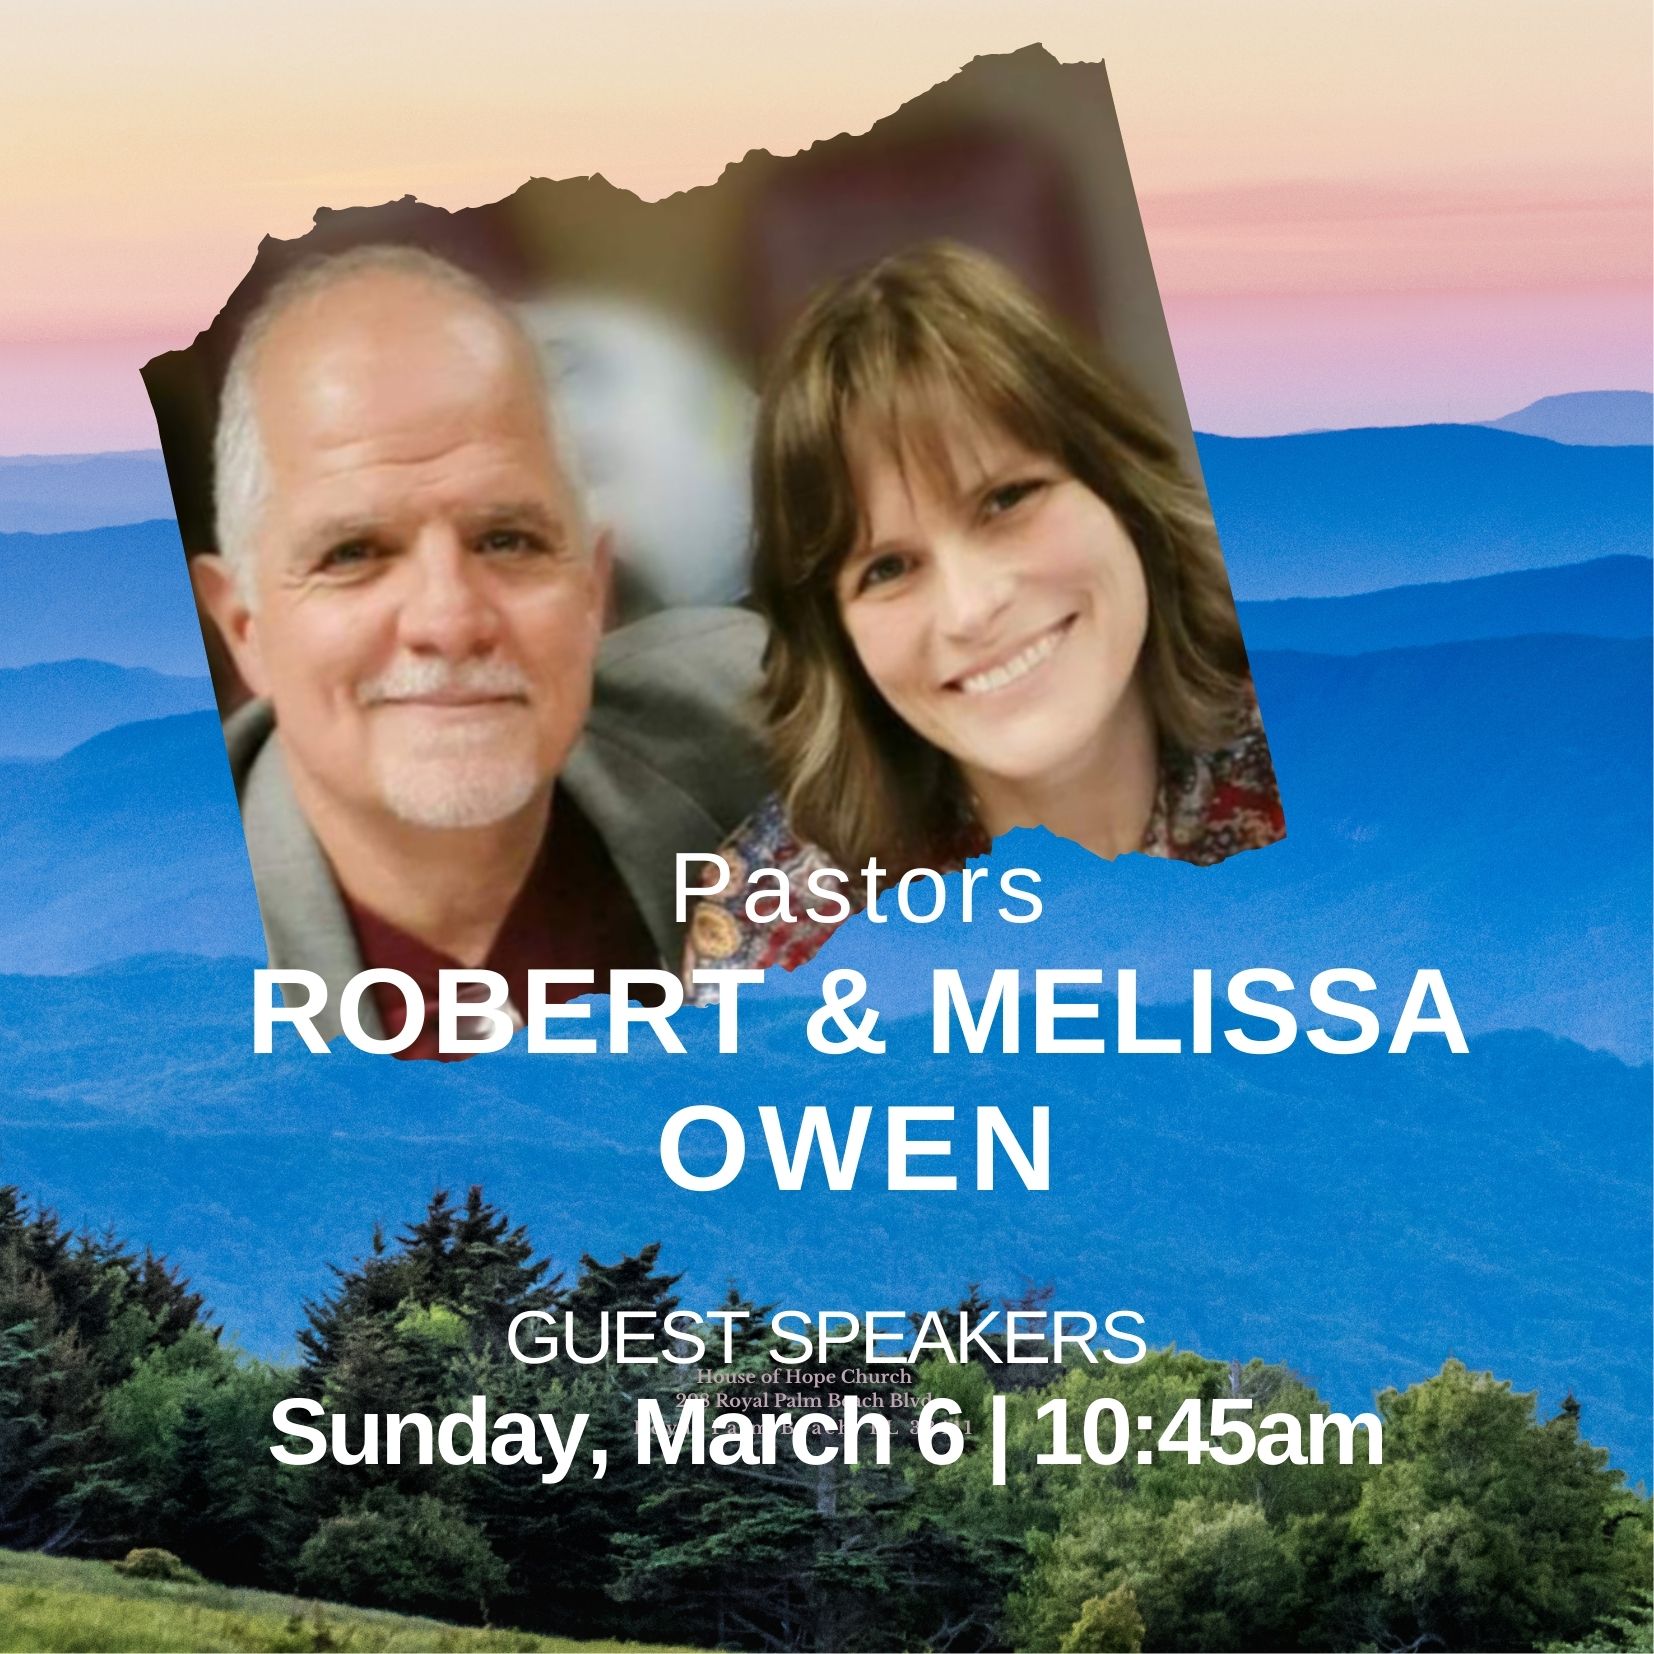 SPECIAL GUEST SPEAKER PASTORS ROBERT & MELISSA OWENS